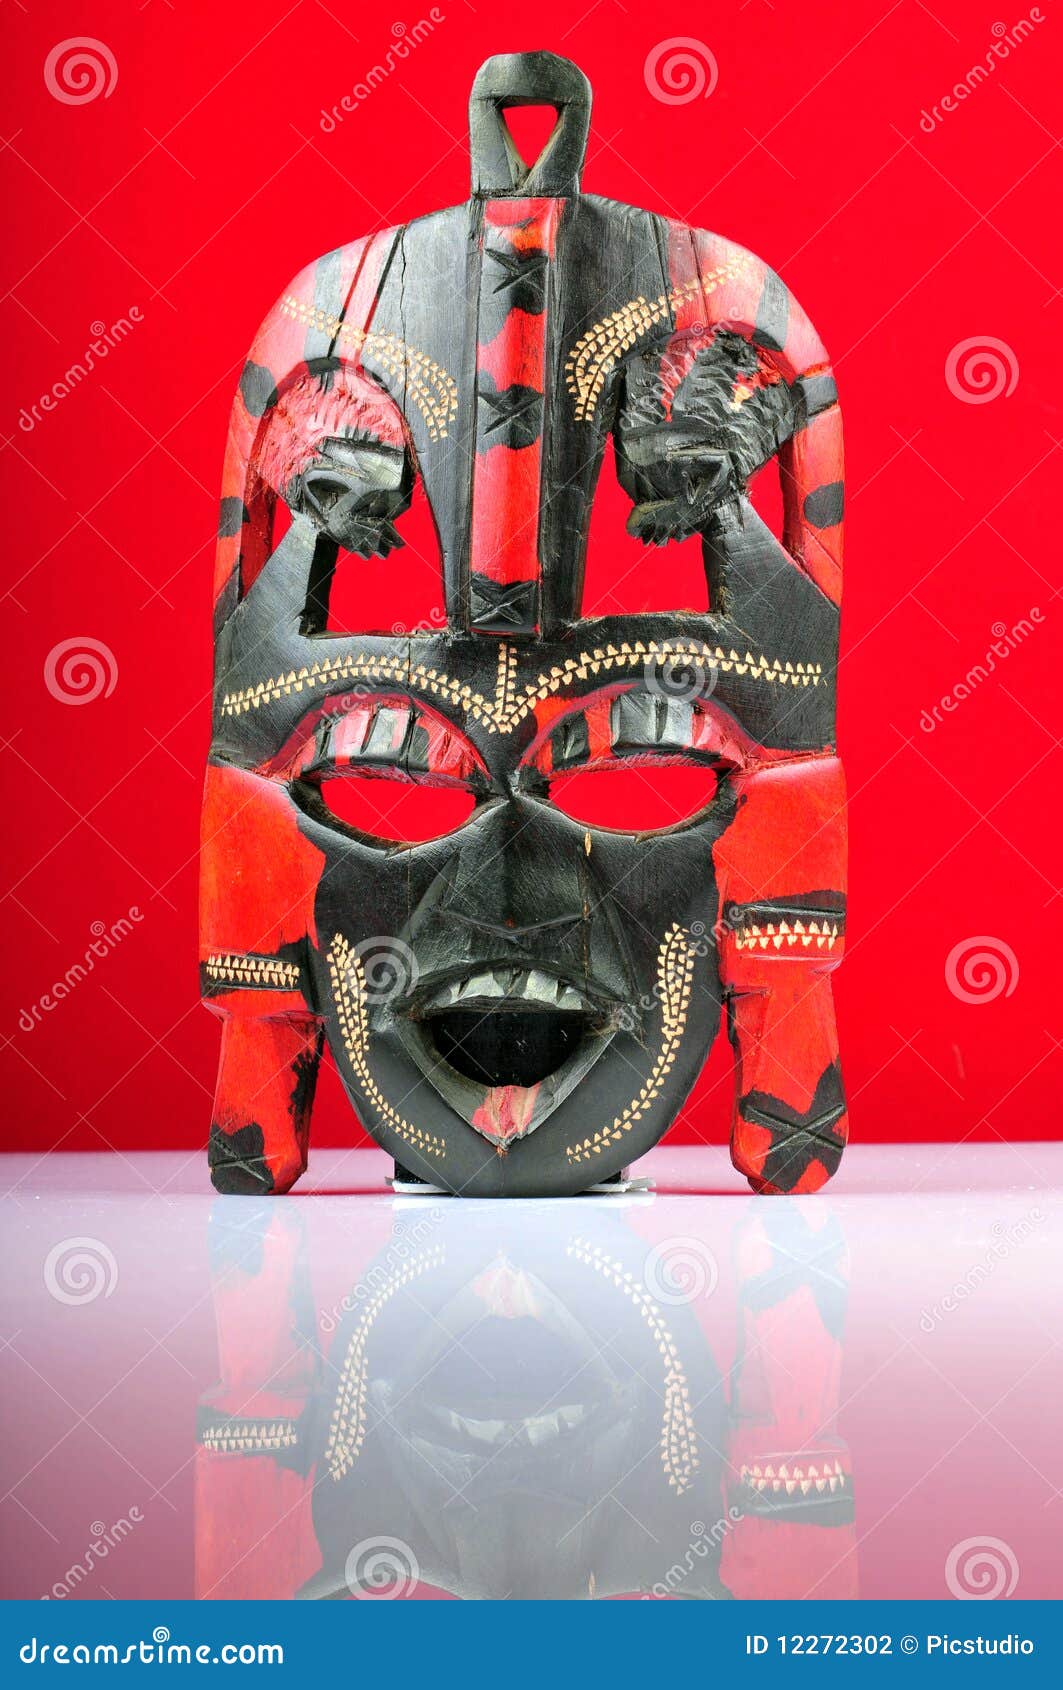 voodoo mask